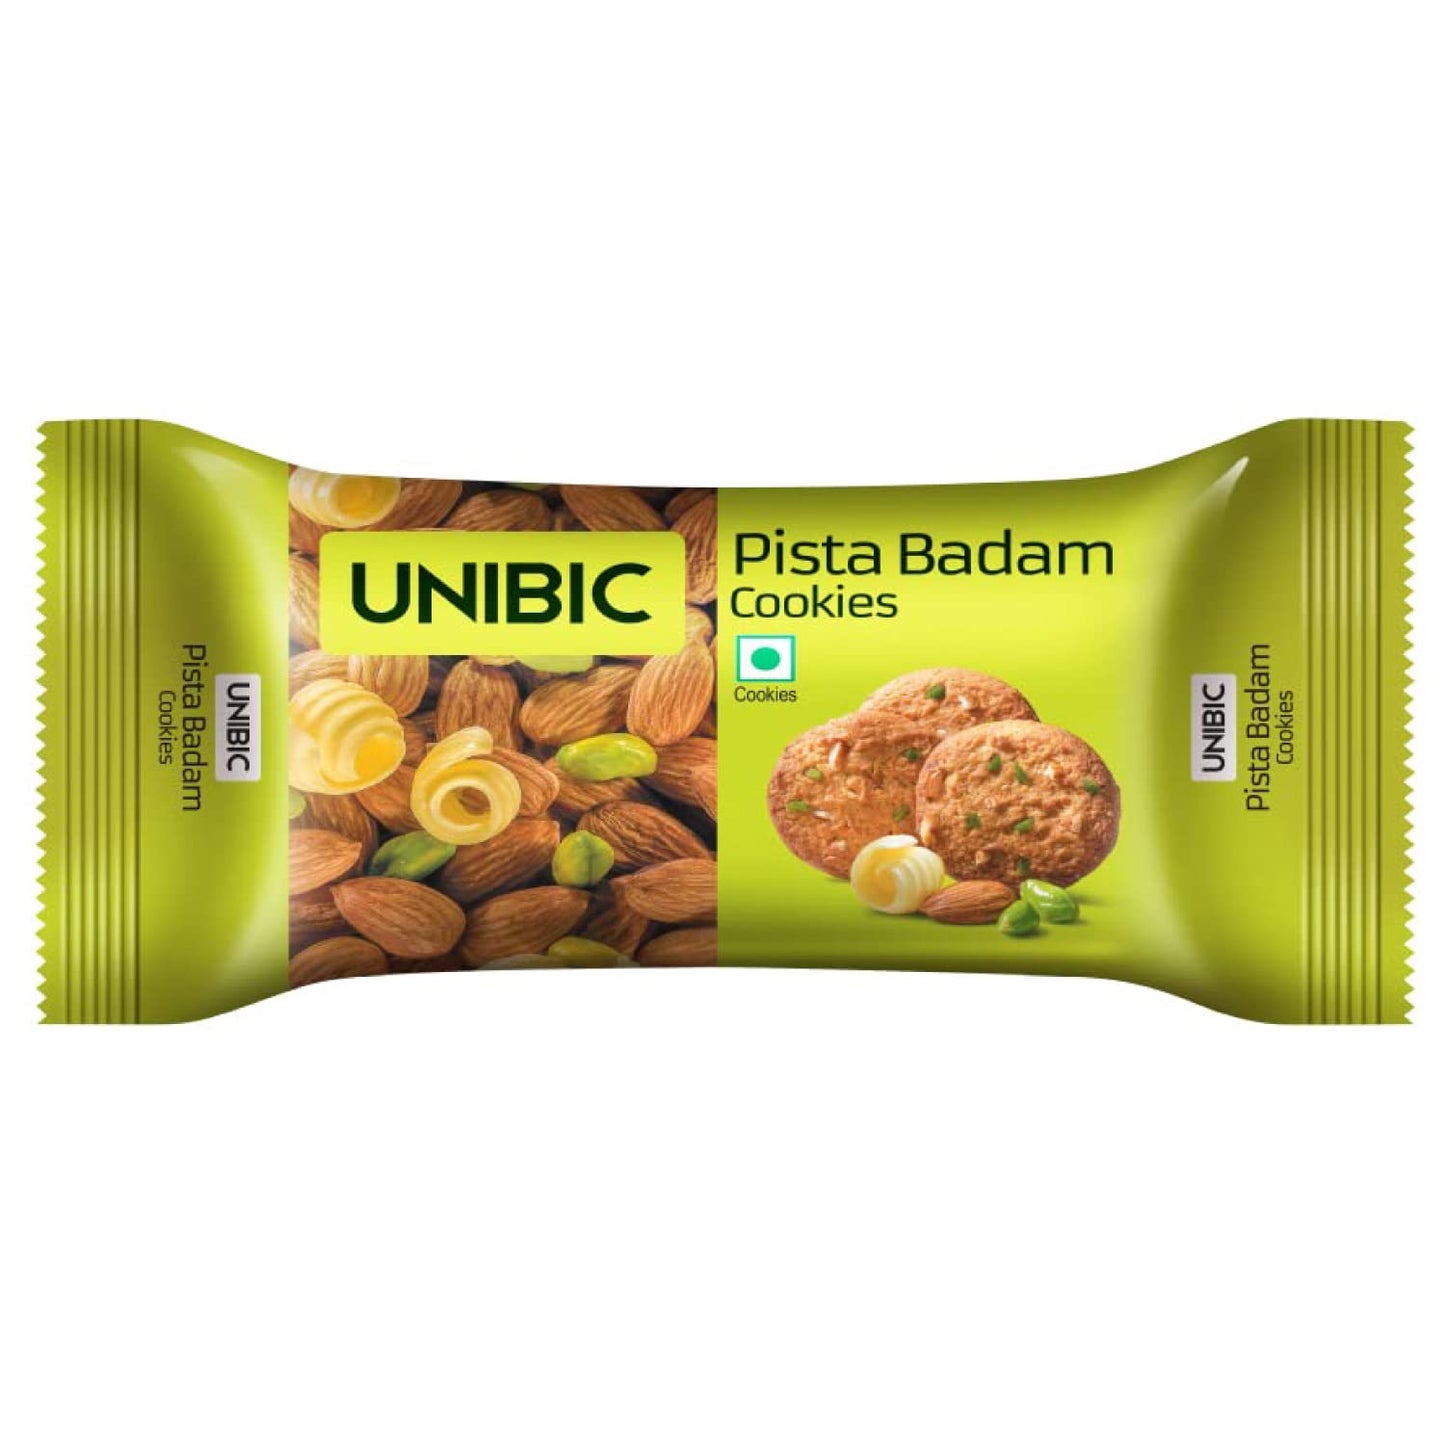 UNIBIC Pista Badam Tiffin Pack (900g, Pack of 12)